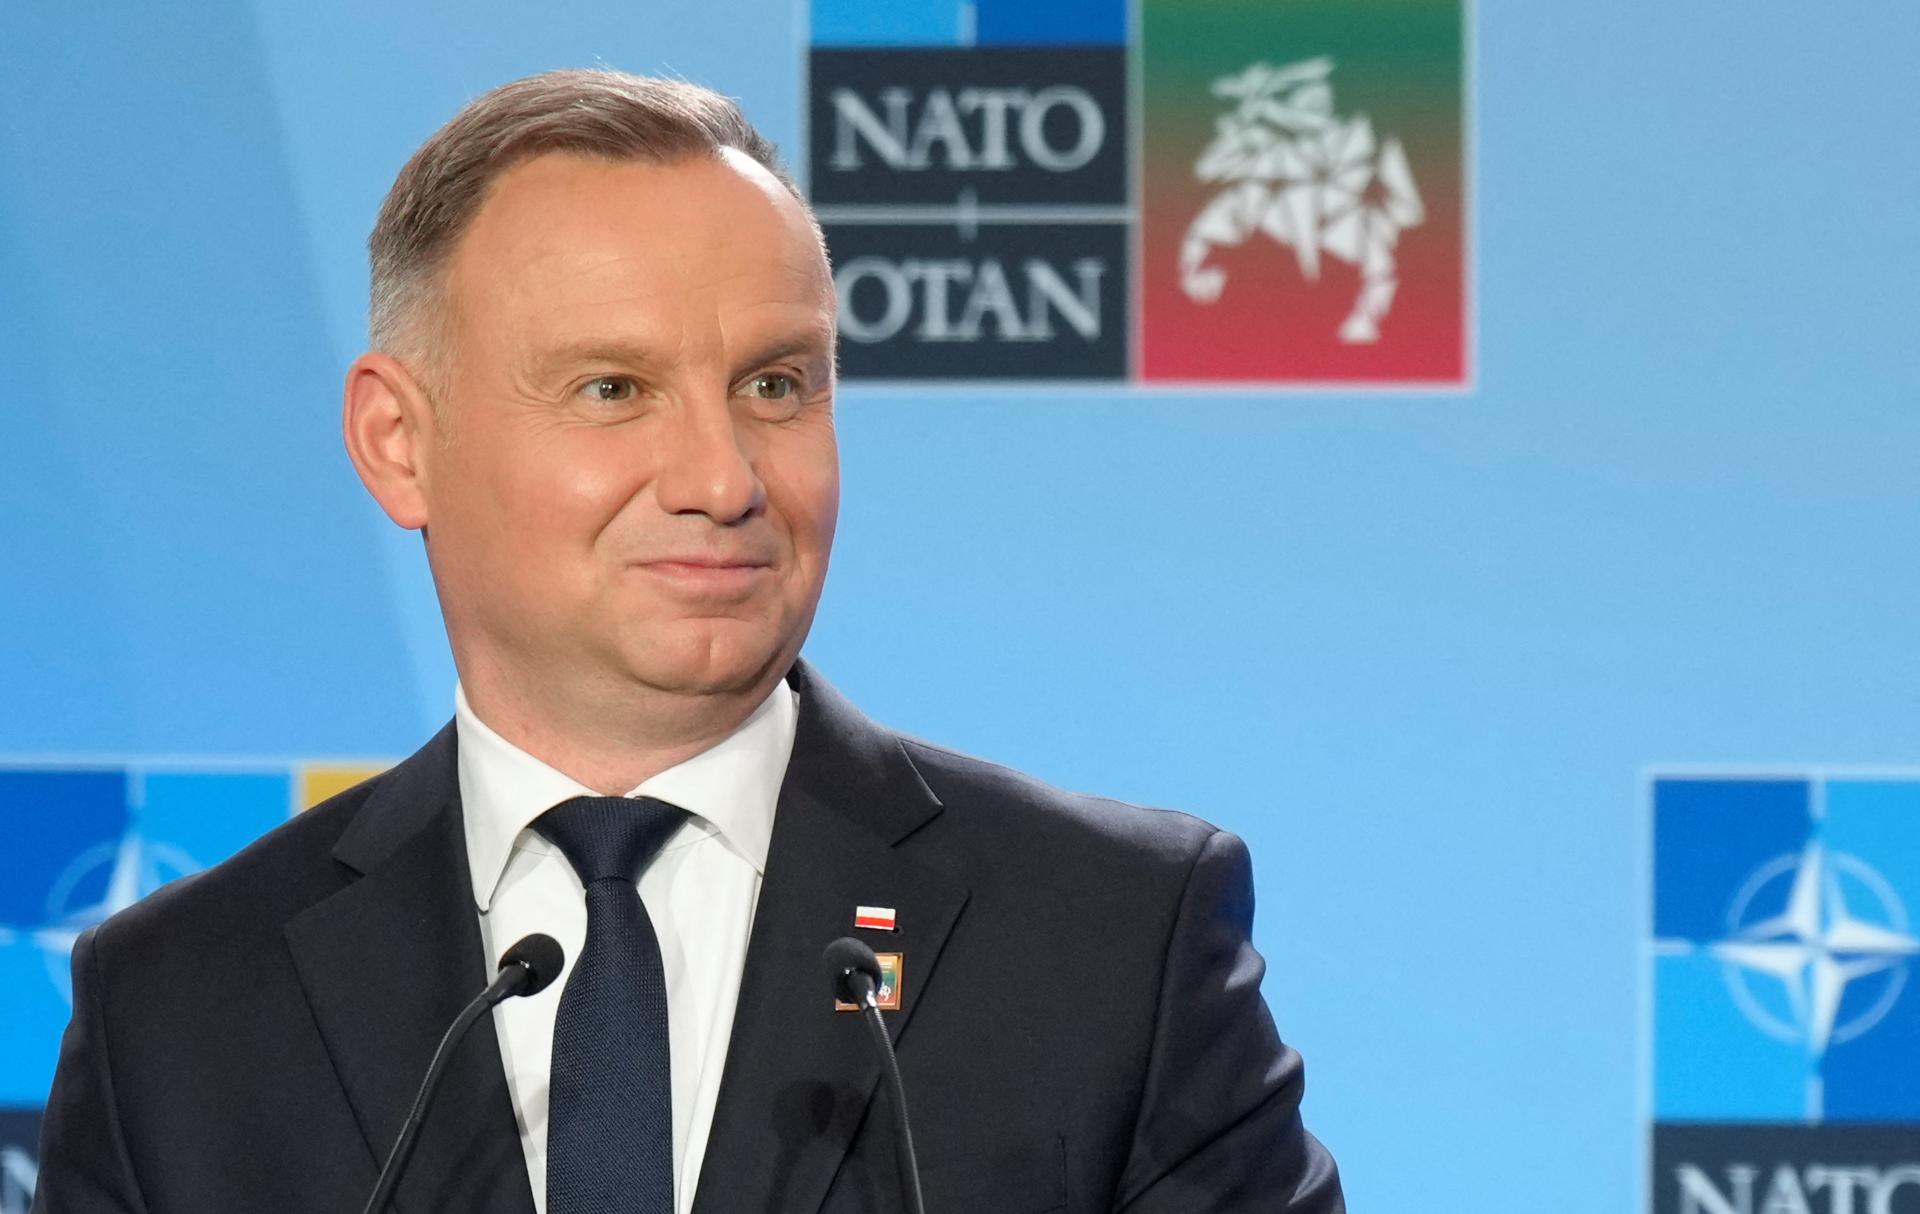 Prezydent Polski Duda podpisuje znowelizowaną wersję rosyjskiej ustawy o wpływach, komisja ma mniejsze uprawnienia